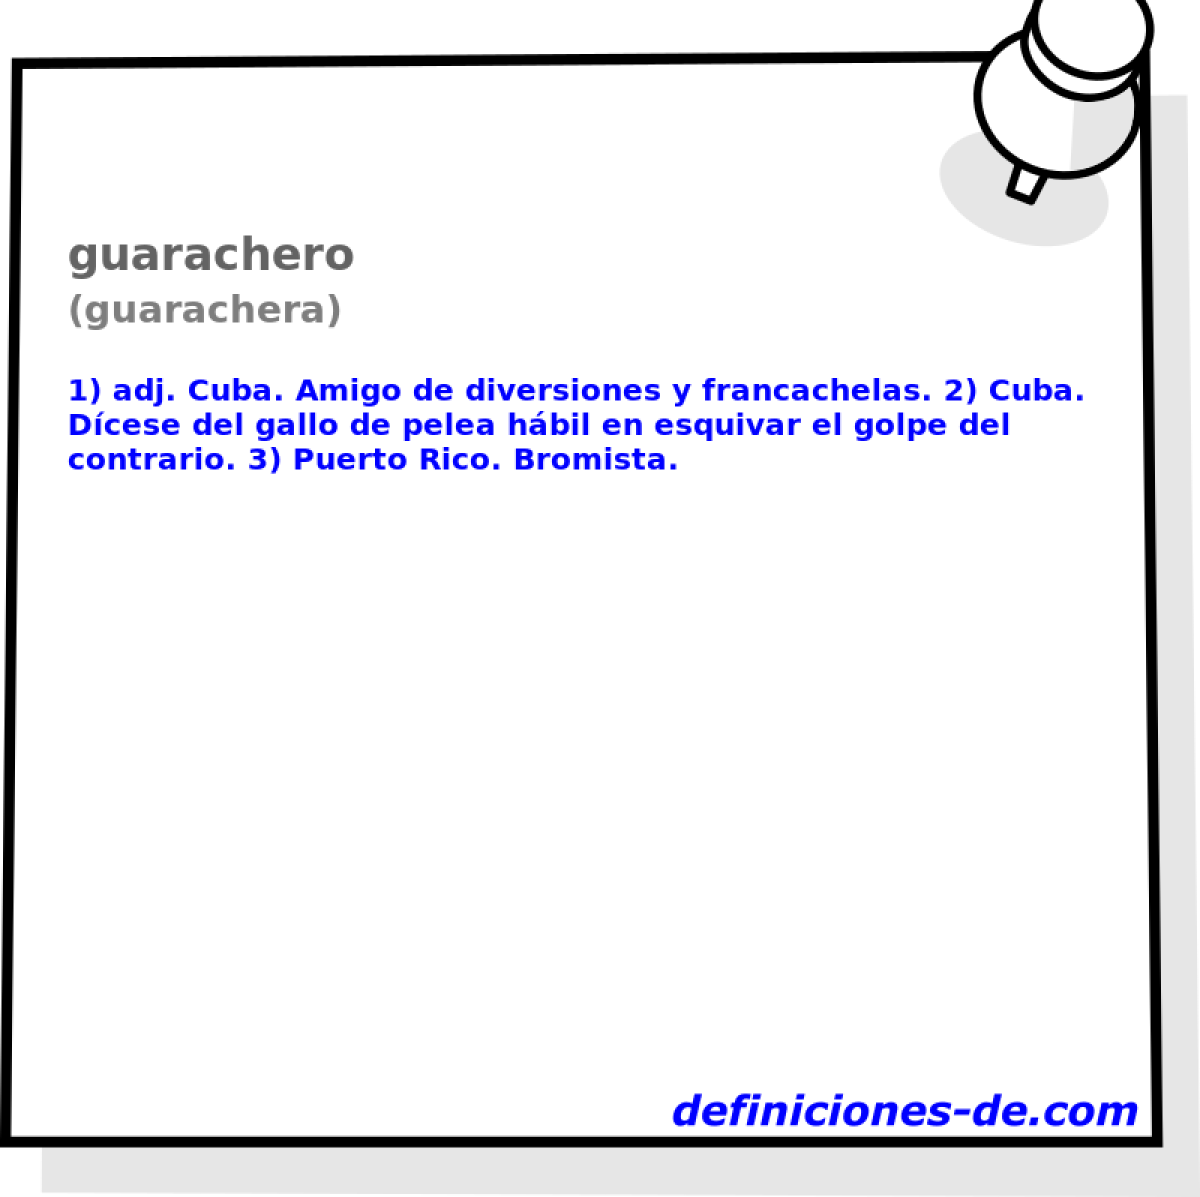 guarachero (guarachera)